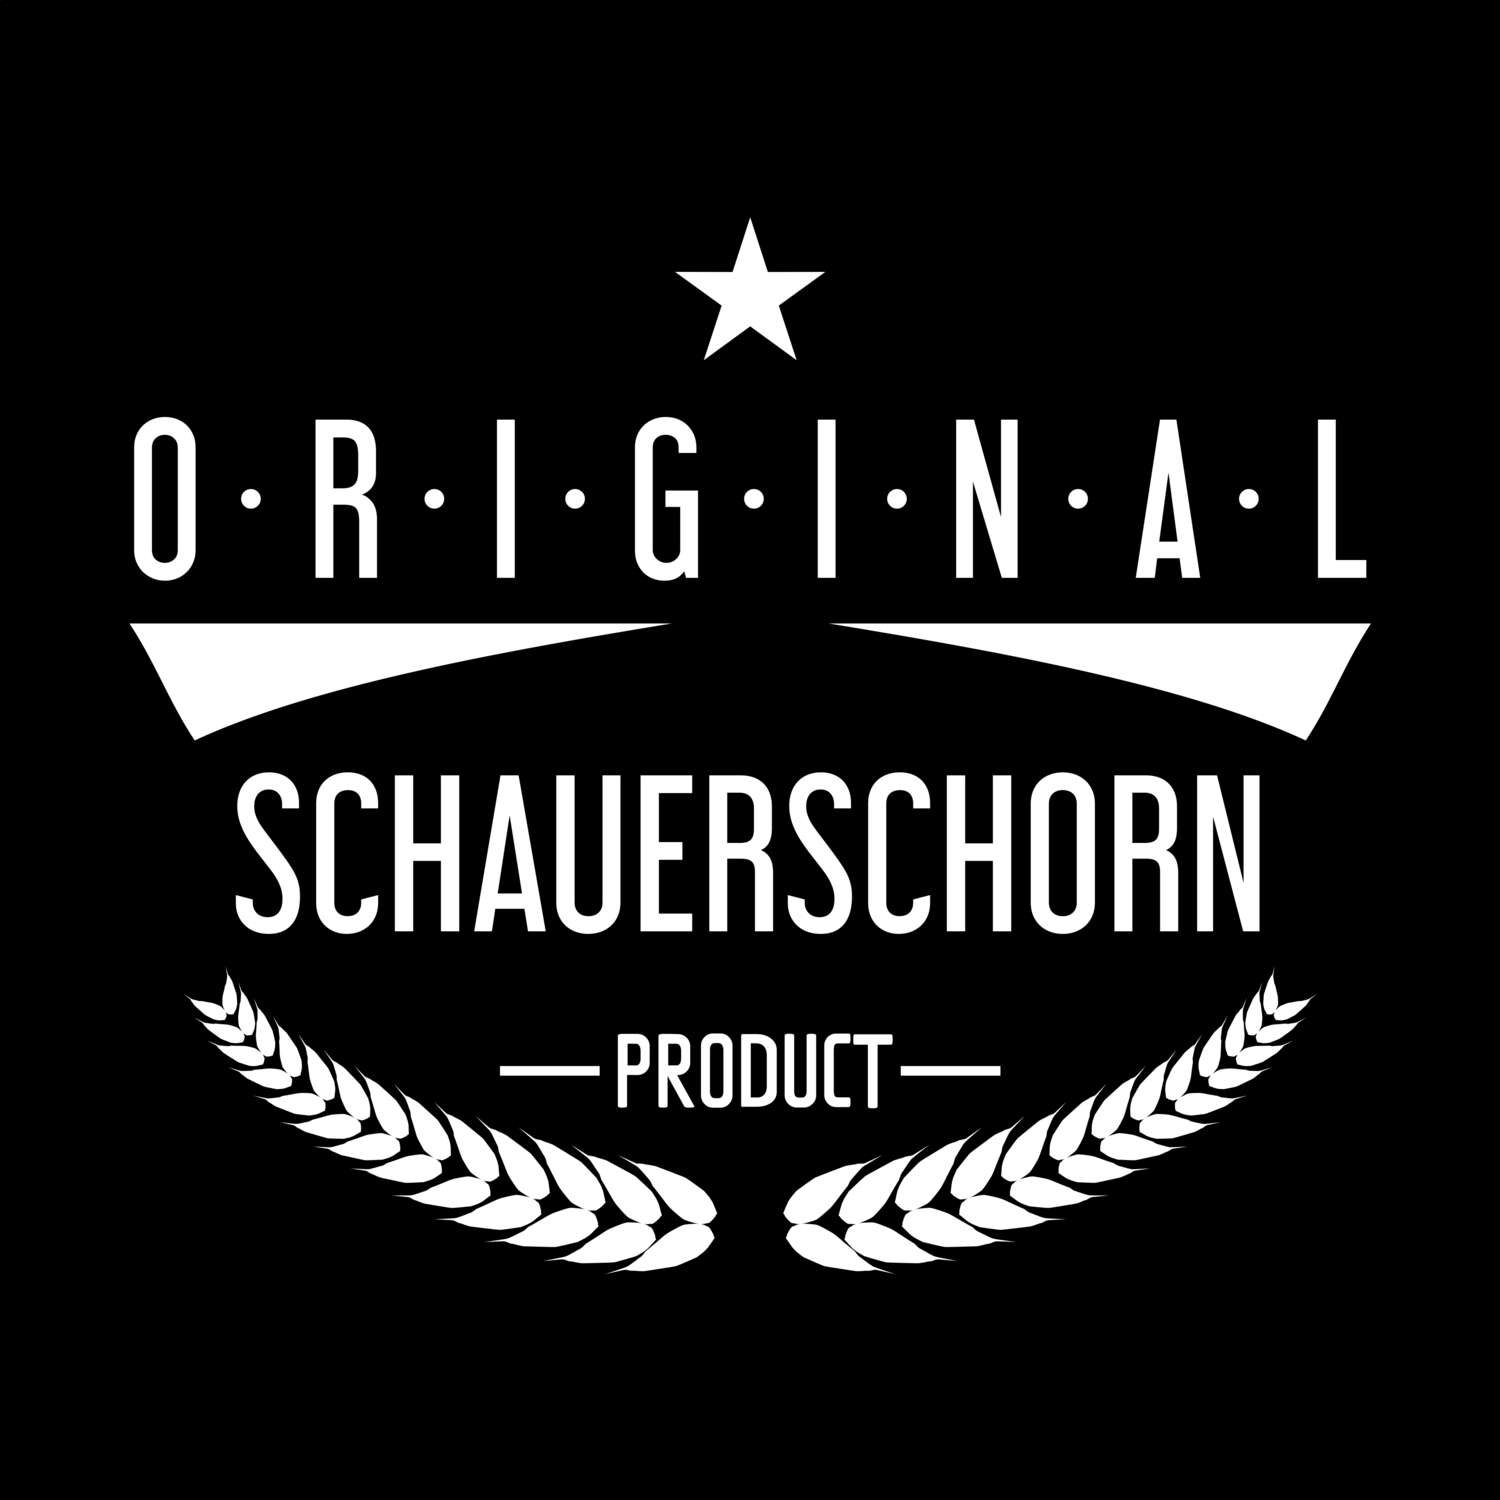 Schauerschorn T-Shirt »Original Product«